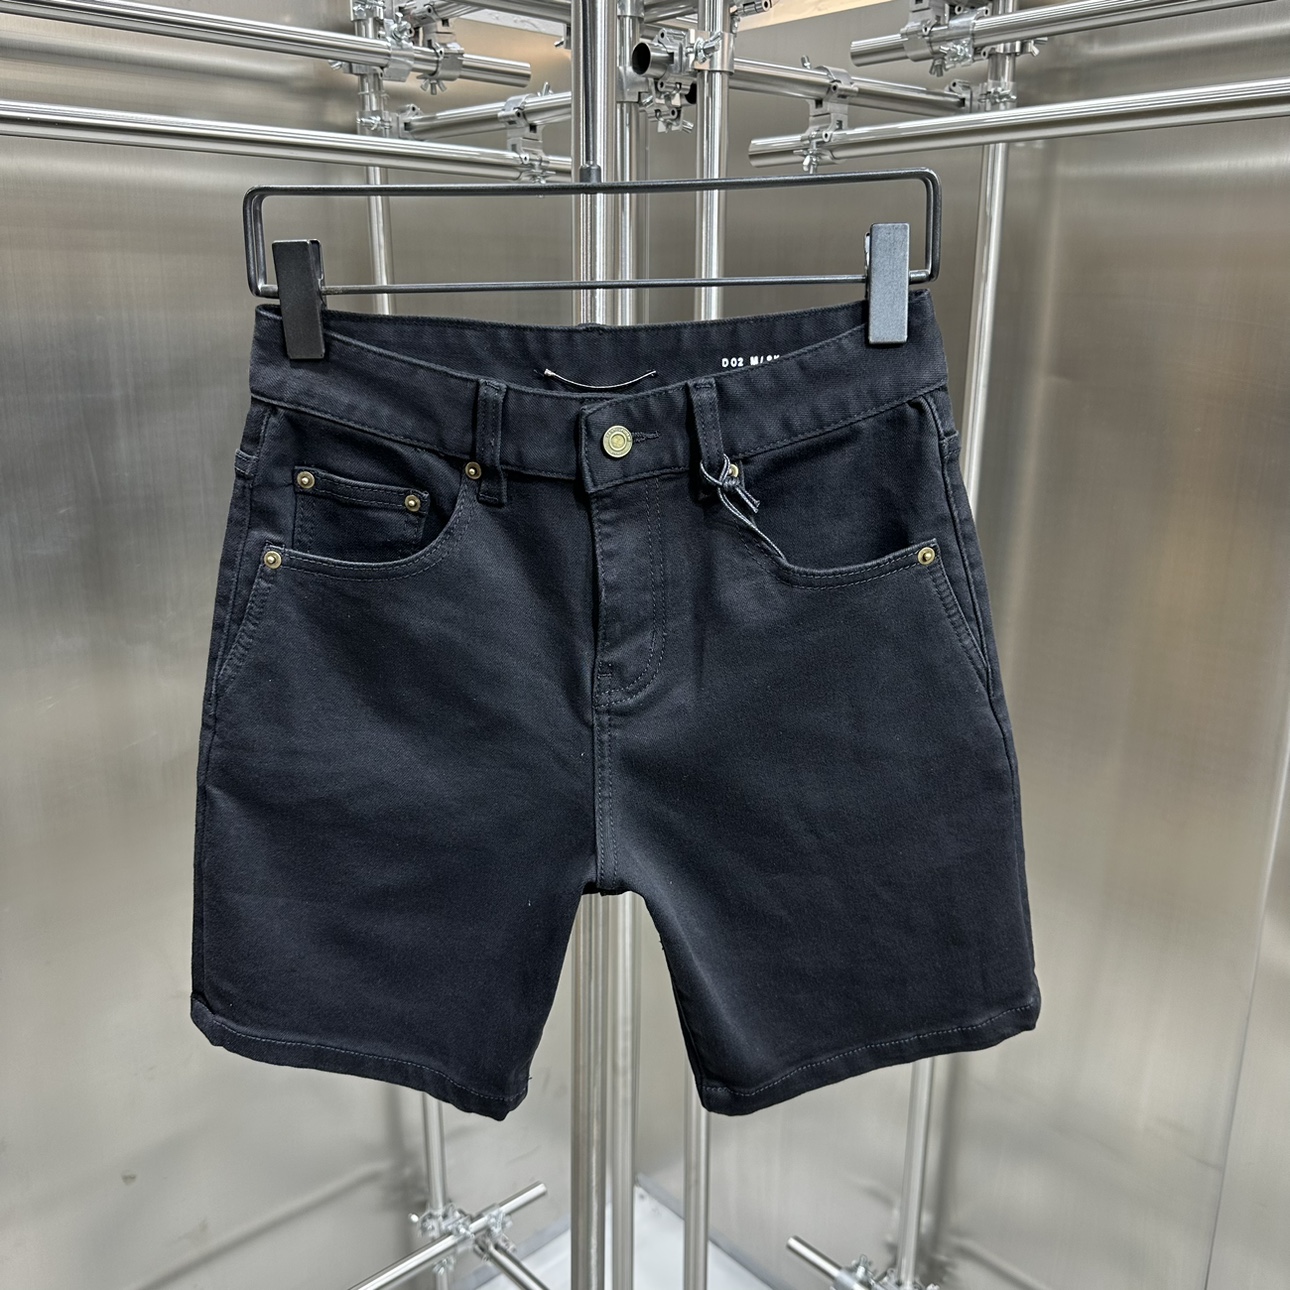 高端货 定制面料 手工水洗 字母钢印设计 男士五分牛仔短裤夏季